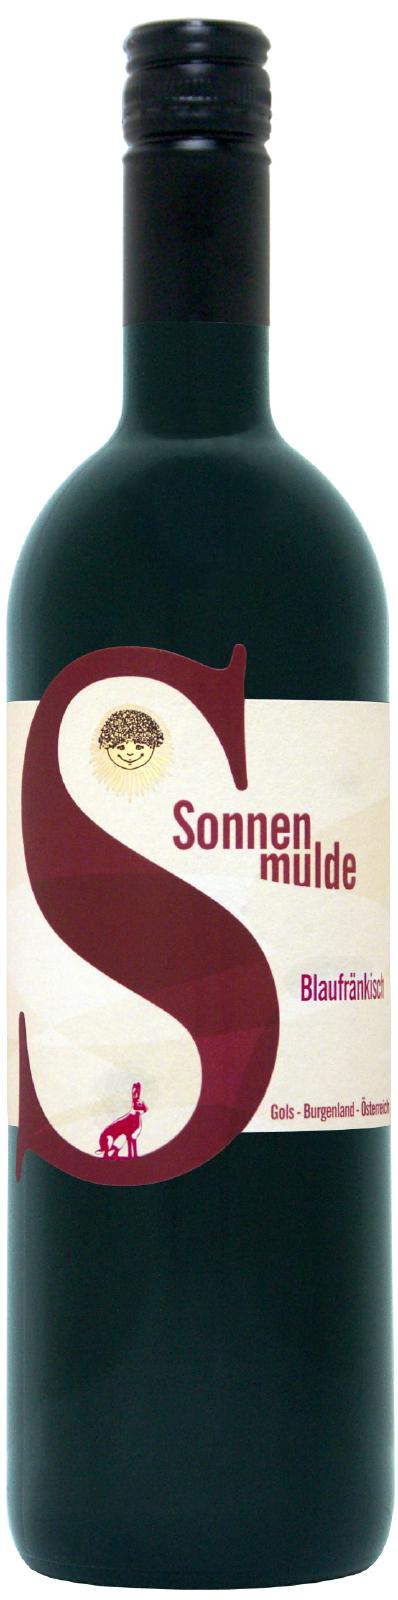 A bottle of Blaufränkisch semi dry